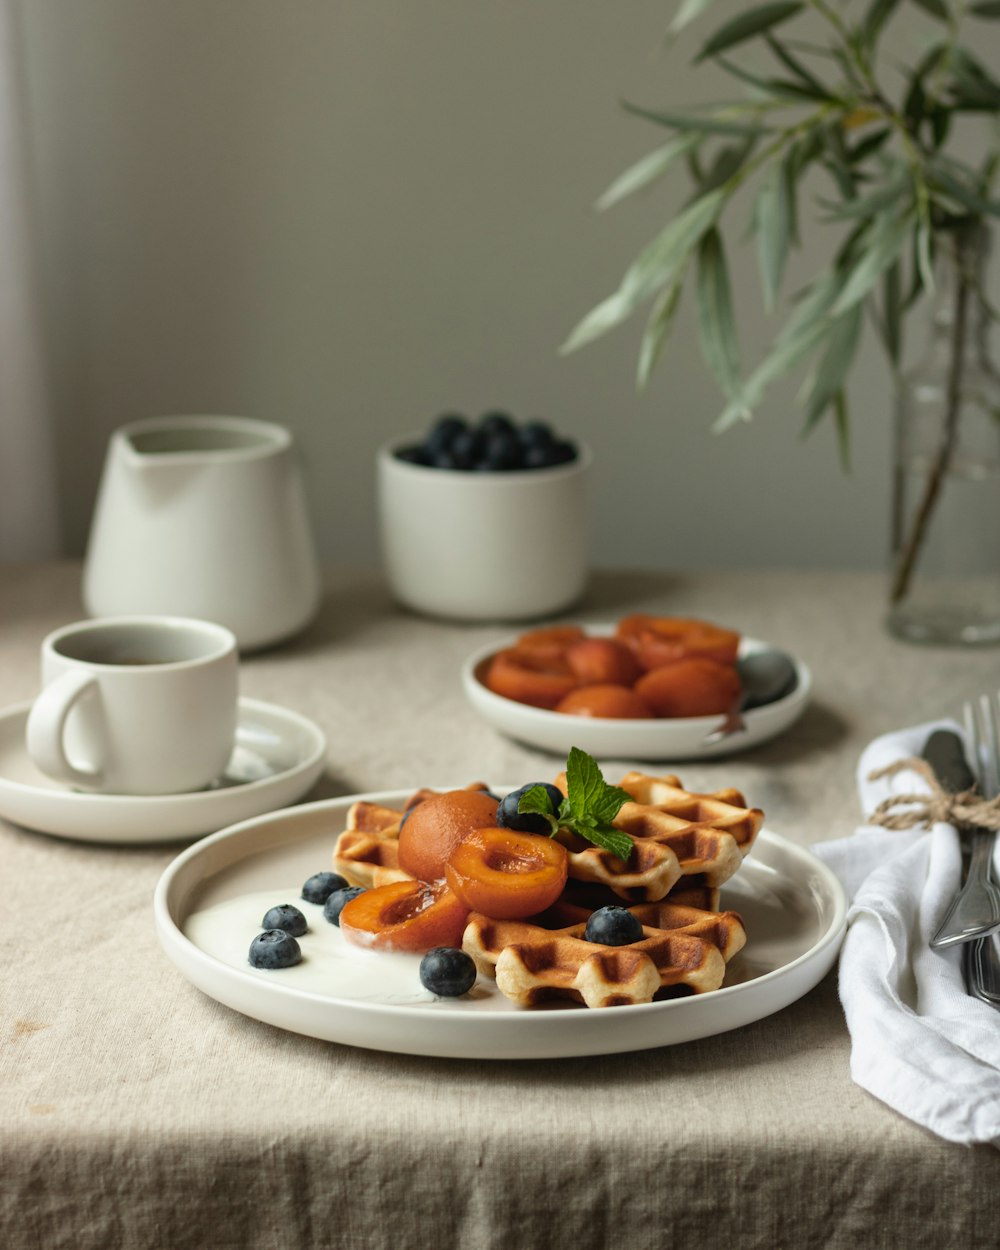 테이블에 흰색 세라믹 머그잔 옆에 흰색 세라믹 접시에 얇게 썬 과일